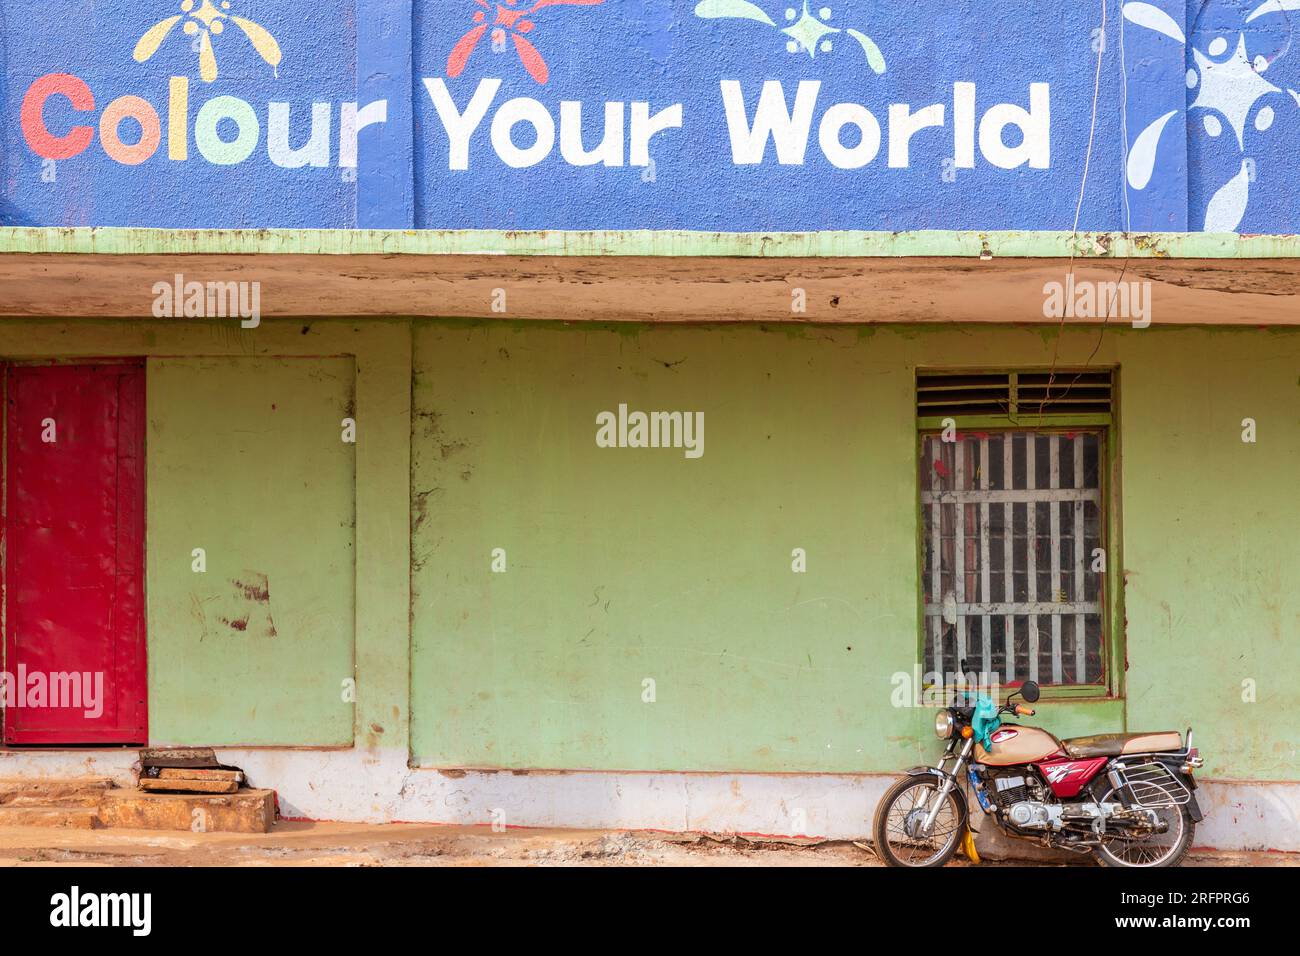 Bringen Sie Farbe in Ihre Welt. Grüne Wand und Motorrad. Jinja, Uganda. Stockfoto